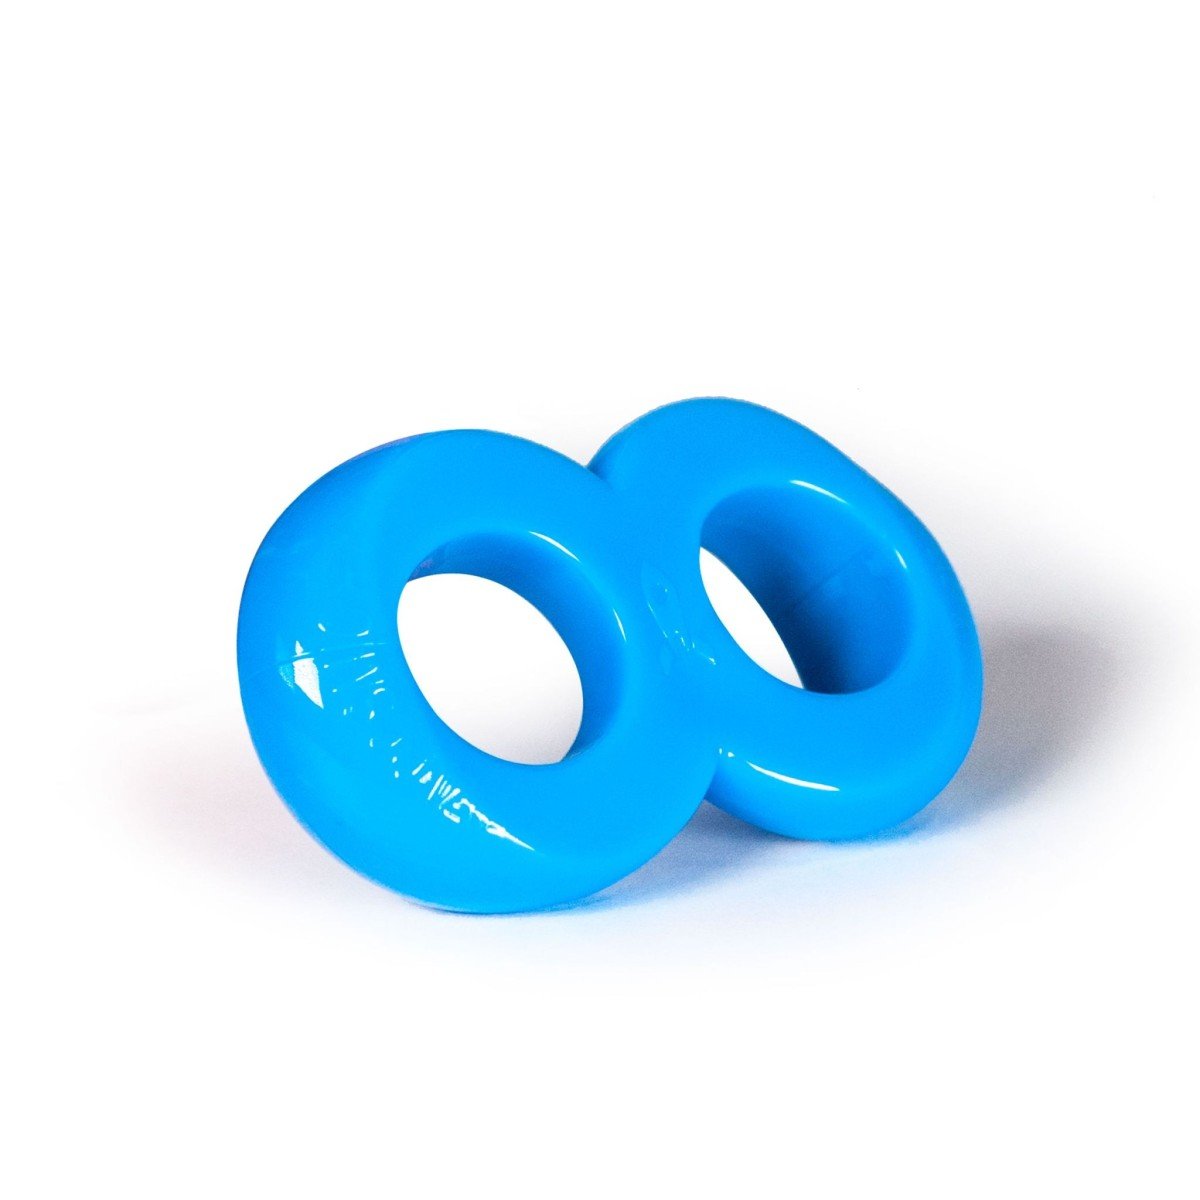 Erekční kroužek Zizi Cosmic Ring modrý, elastický erekční kroužek na penis a varlata